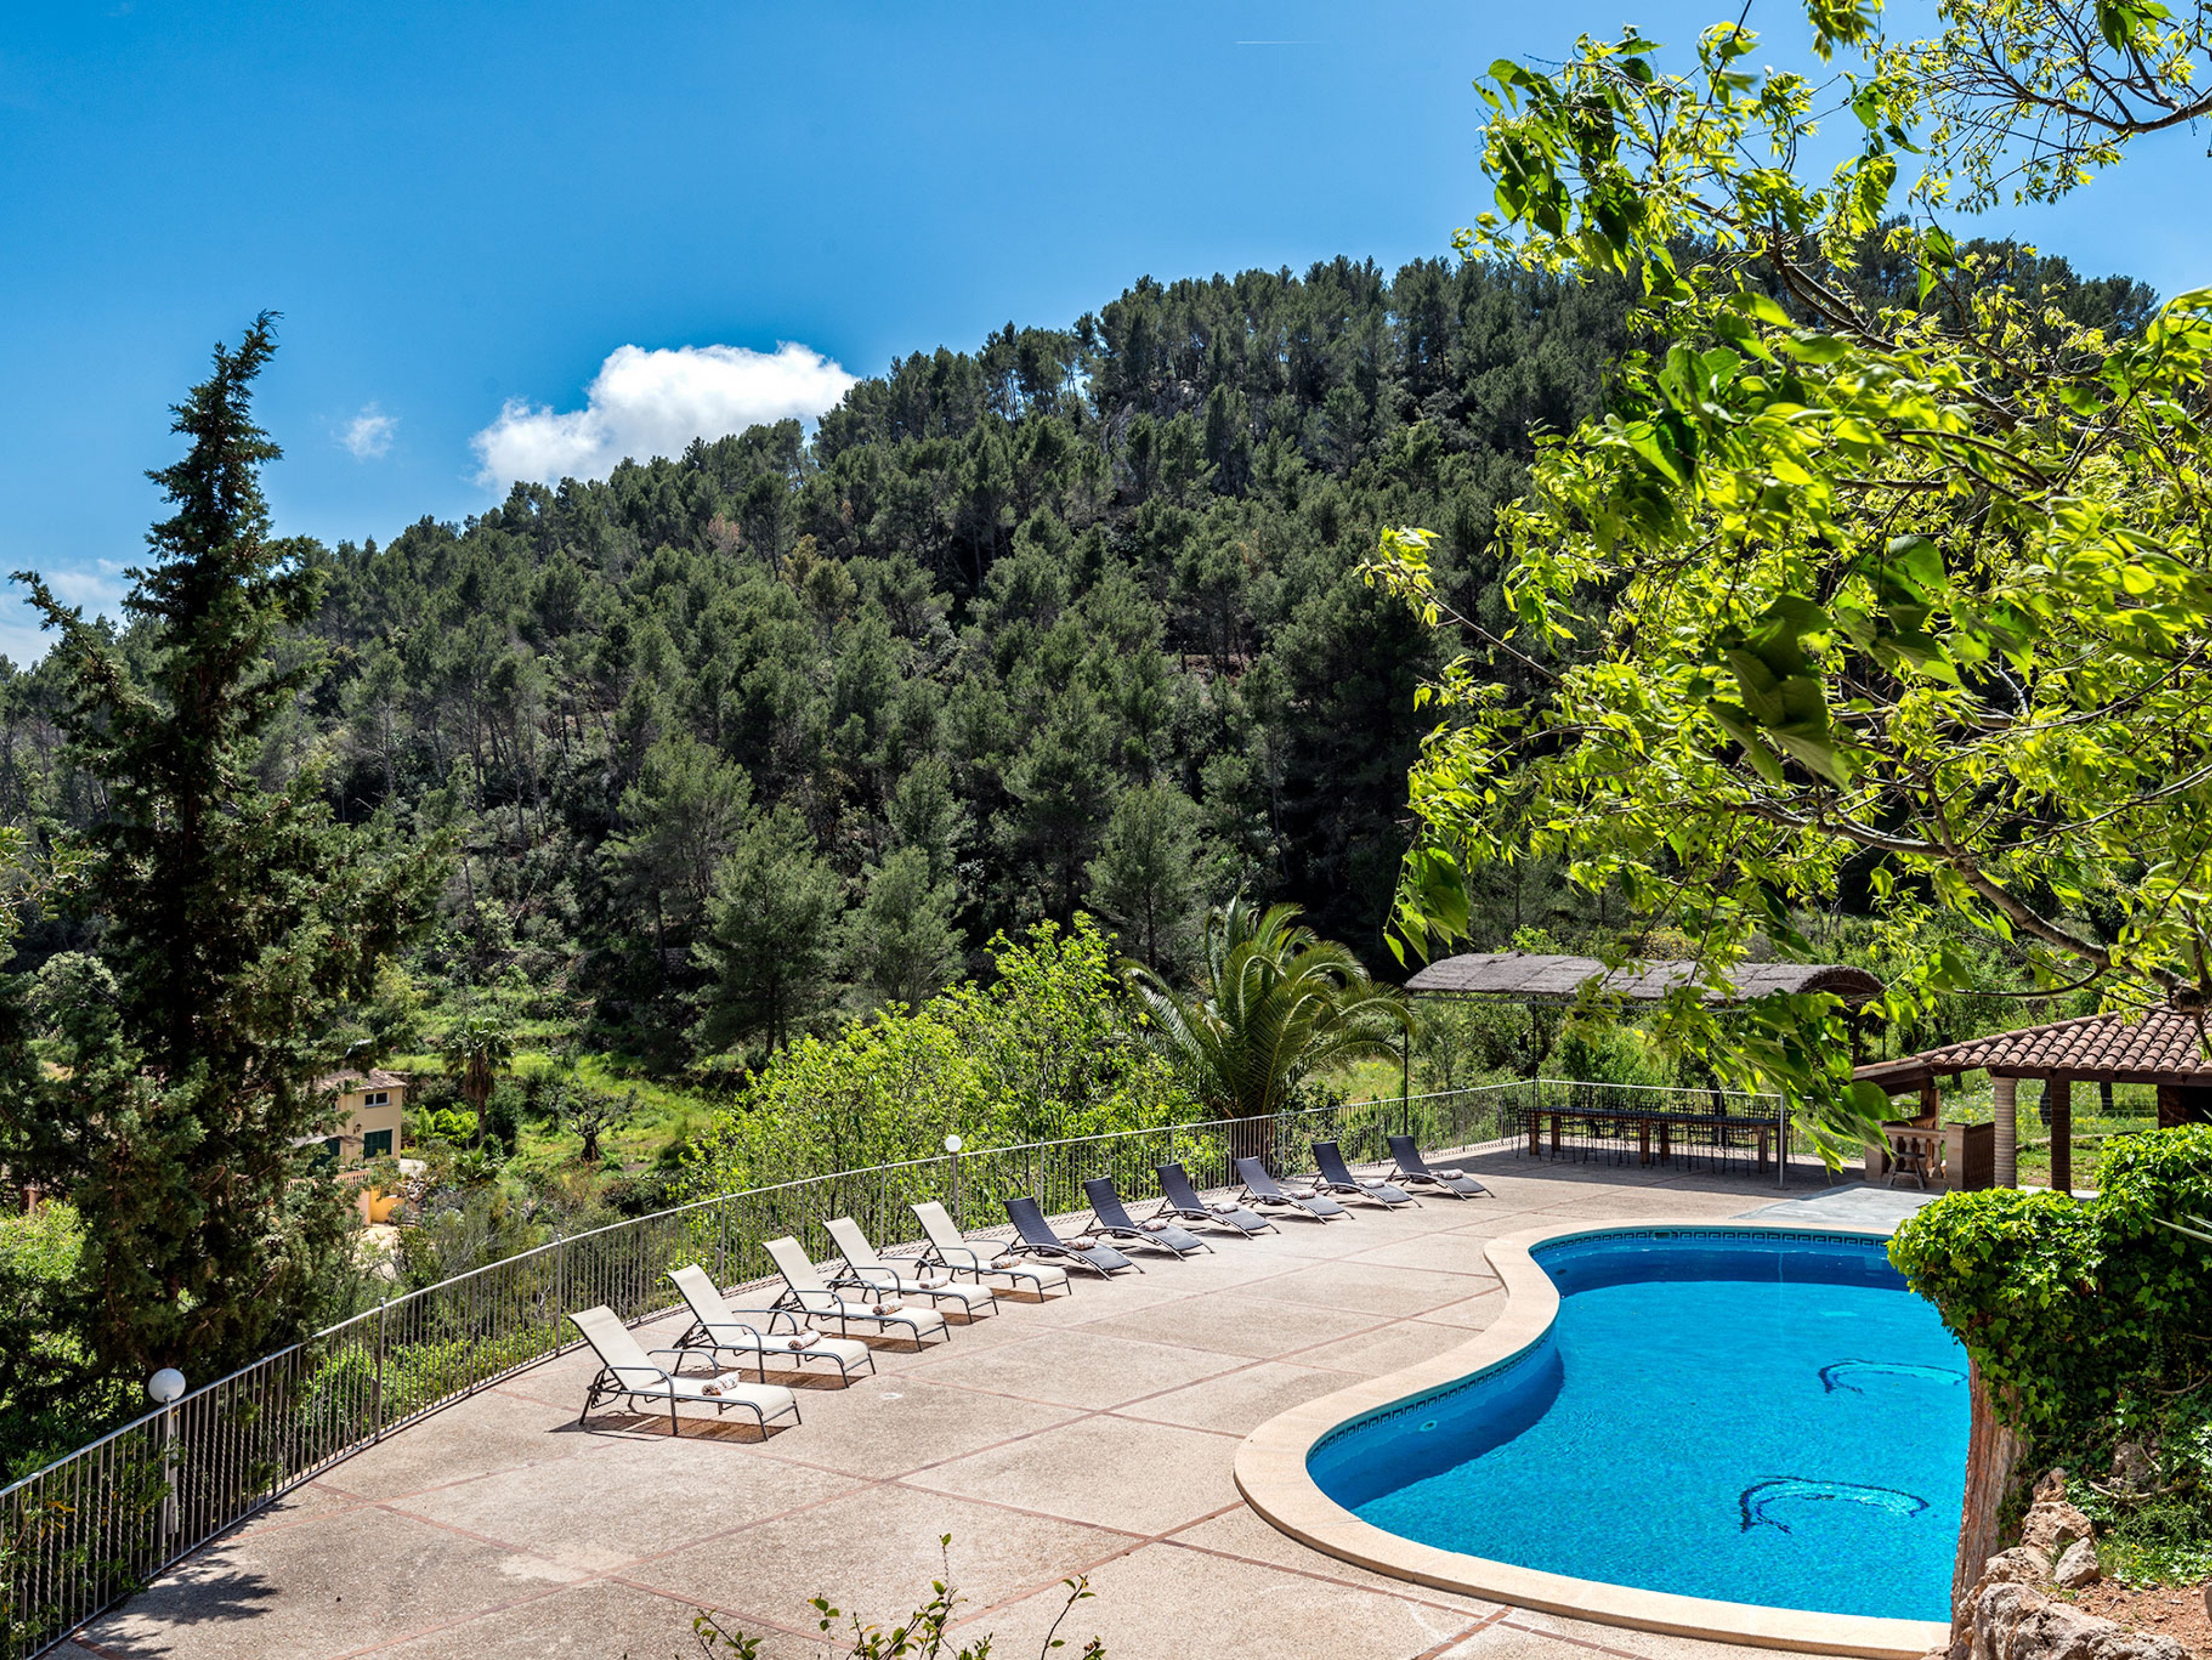  Finca Especial - Majorca holiday villas with pools